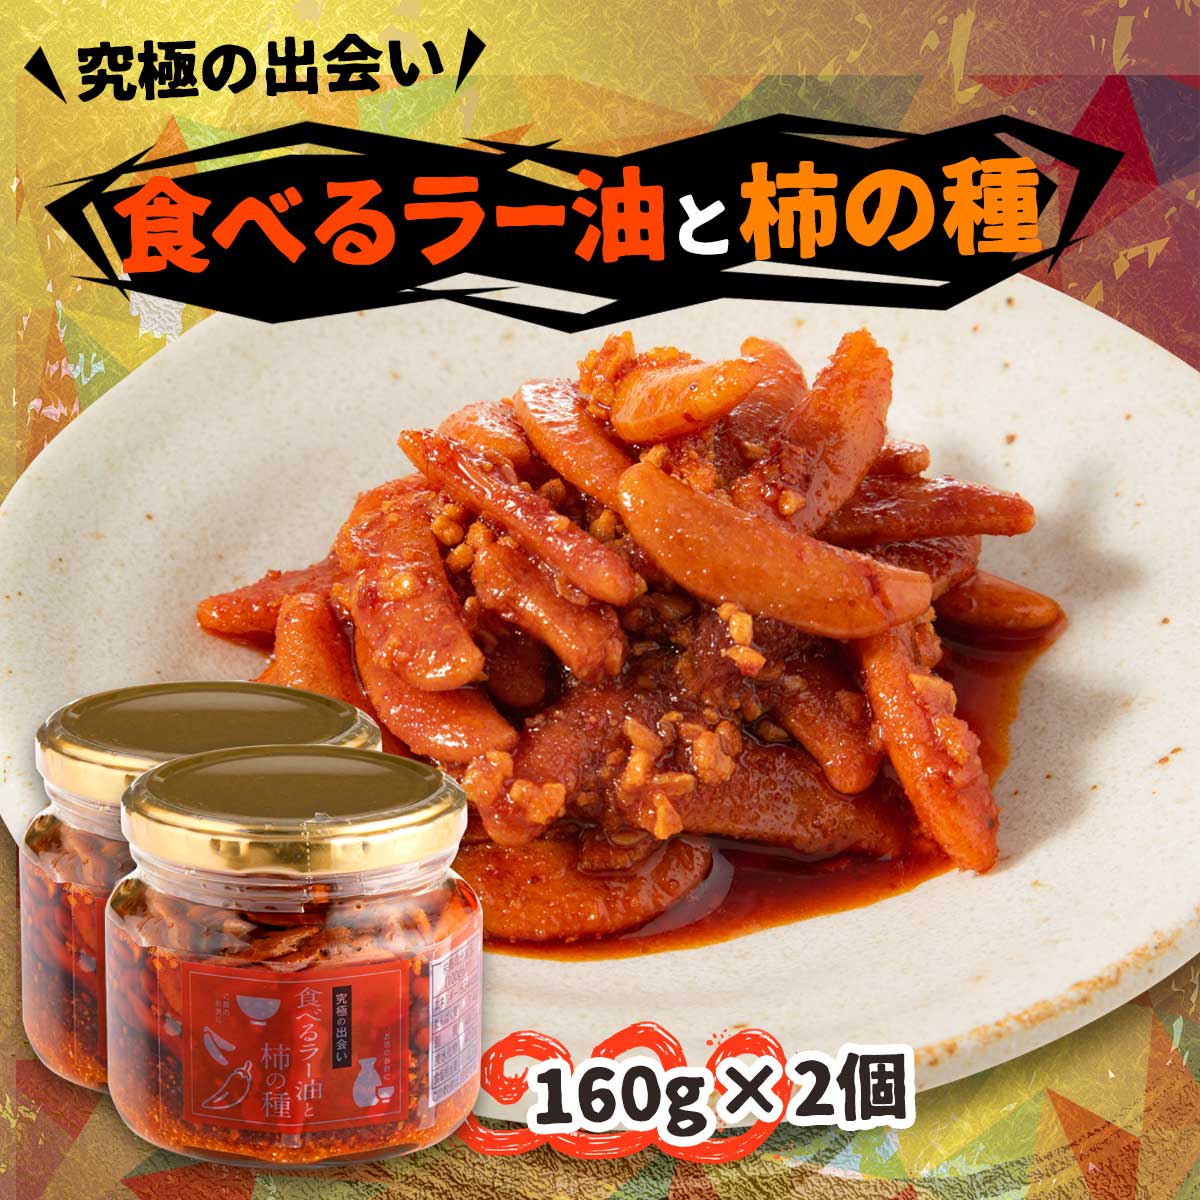 にじデパート 徳島 マルシンフーズ 食べるラー油と柿の種